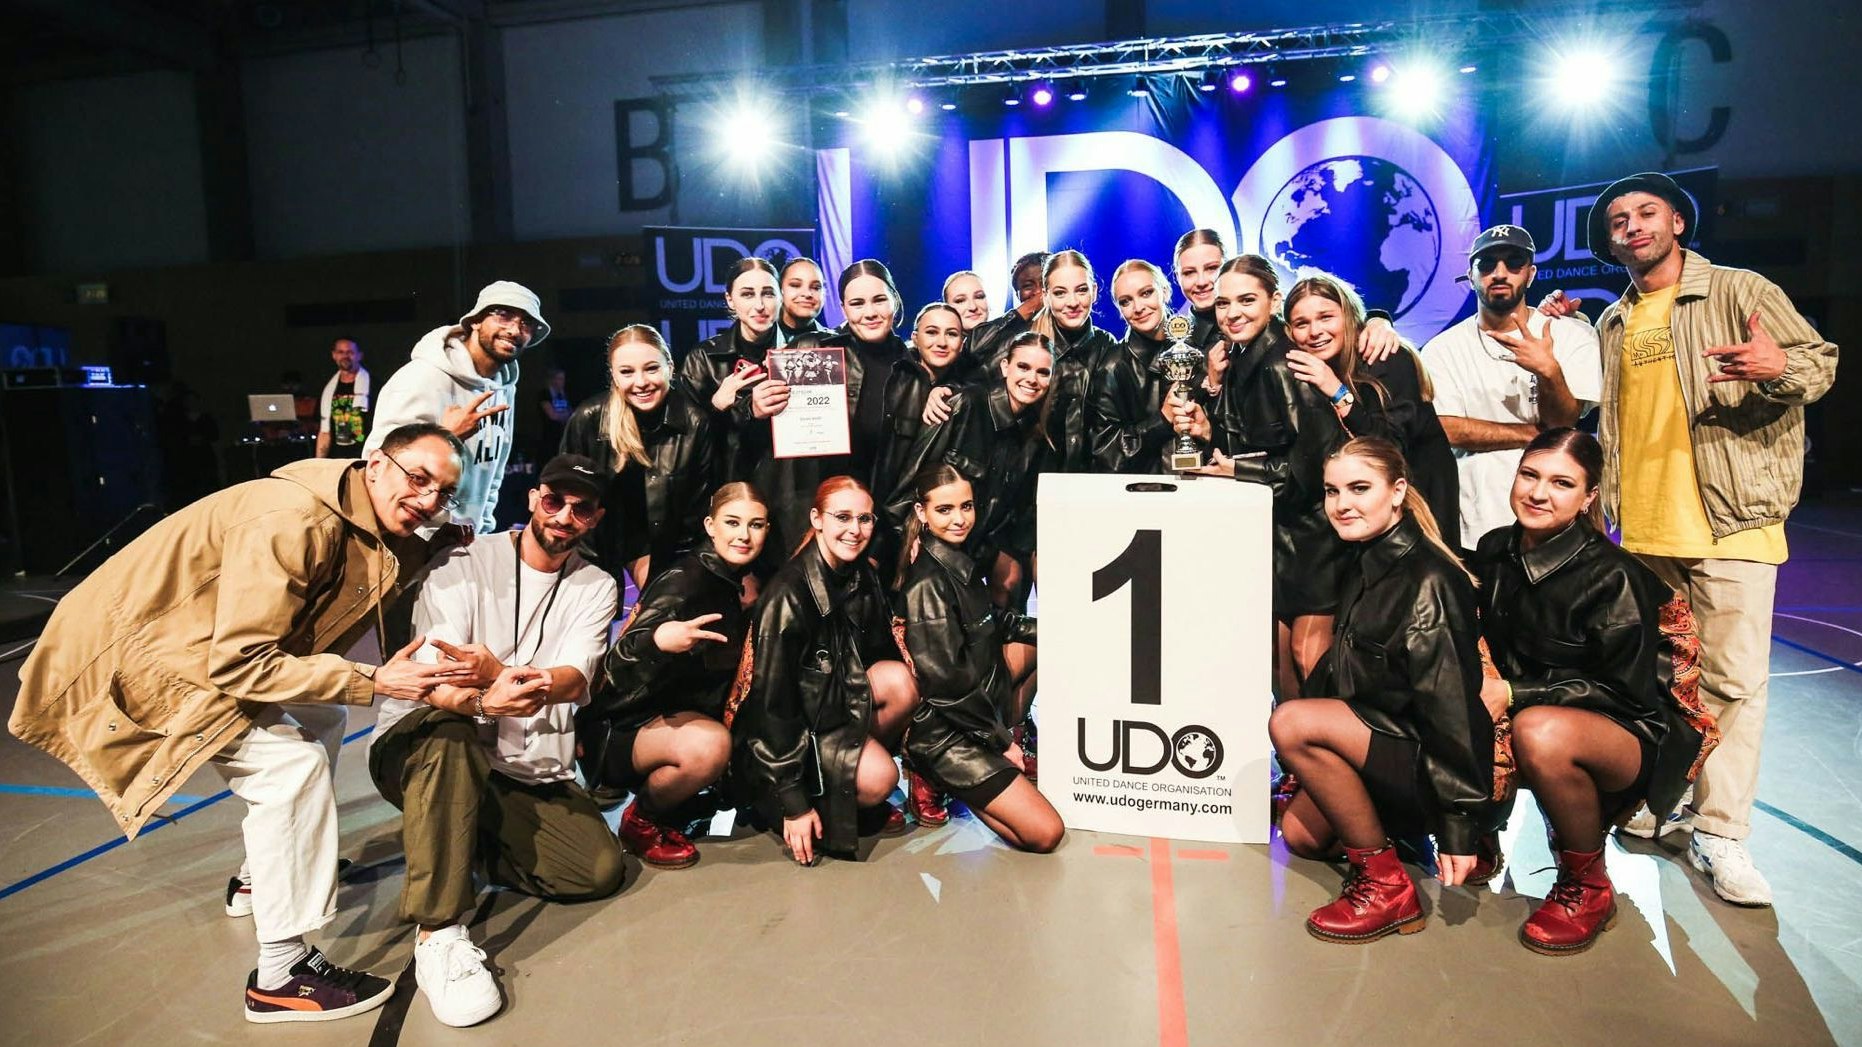 Stolze Siegerinnen: Die Tänzerinnen der "Dedicated"-Crew posieren nach dem Gewinn der Deutschen Meisterschaft in Duisburg mit Mitgliedern der Fachjury. Foto: Eva Berten